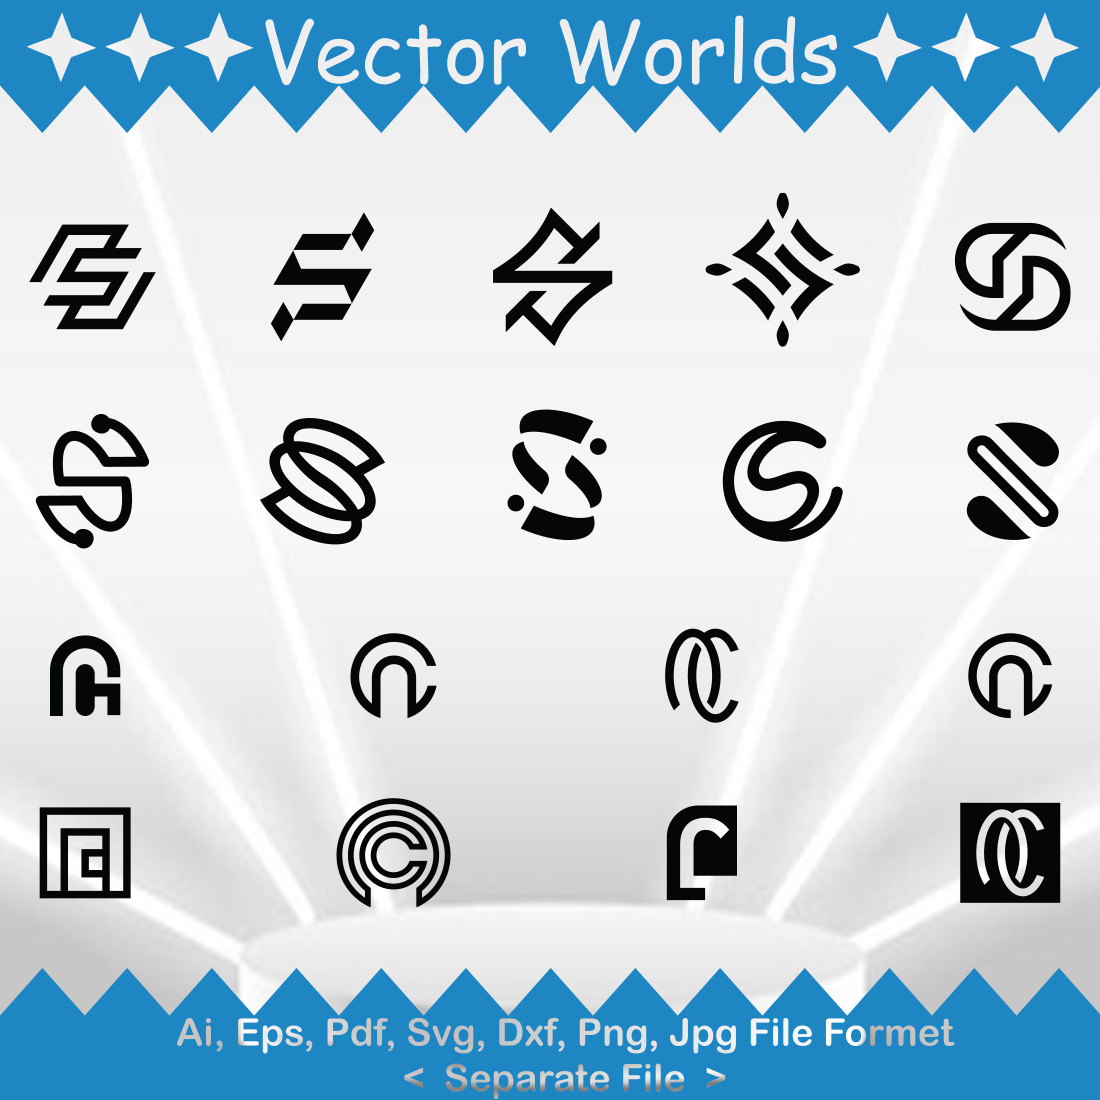 Letter Mark Logo SVG Vector Design cover image.